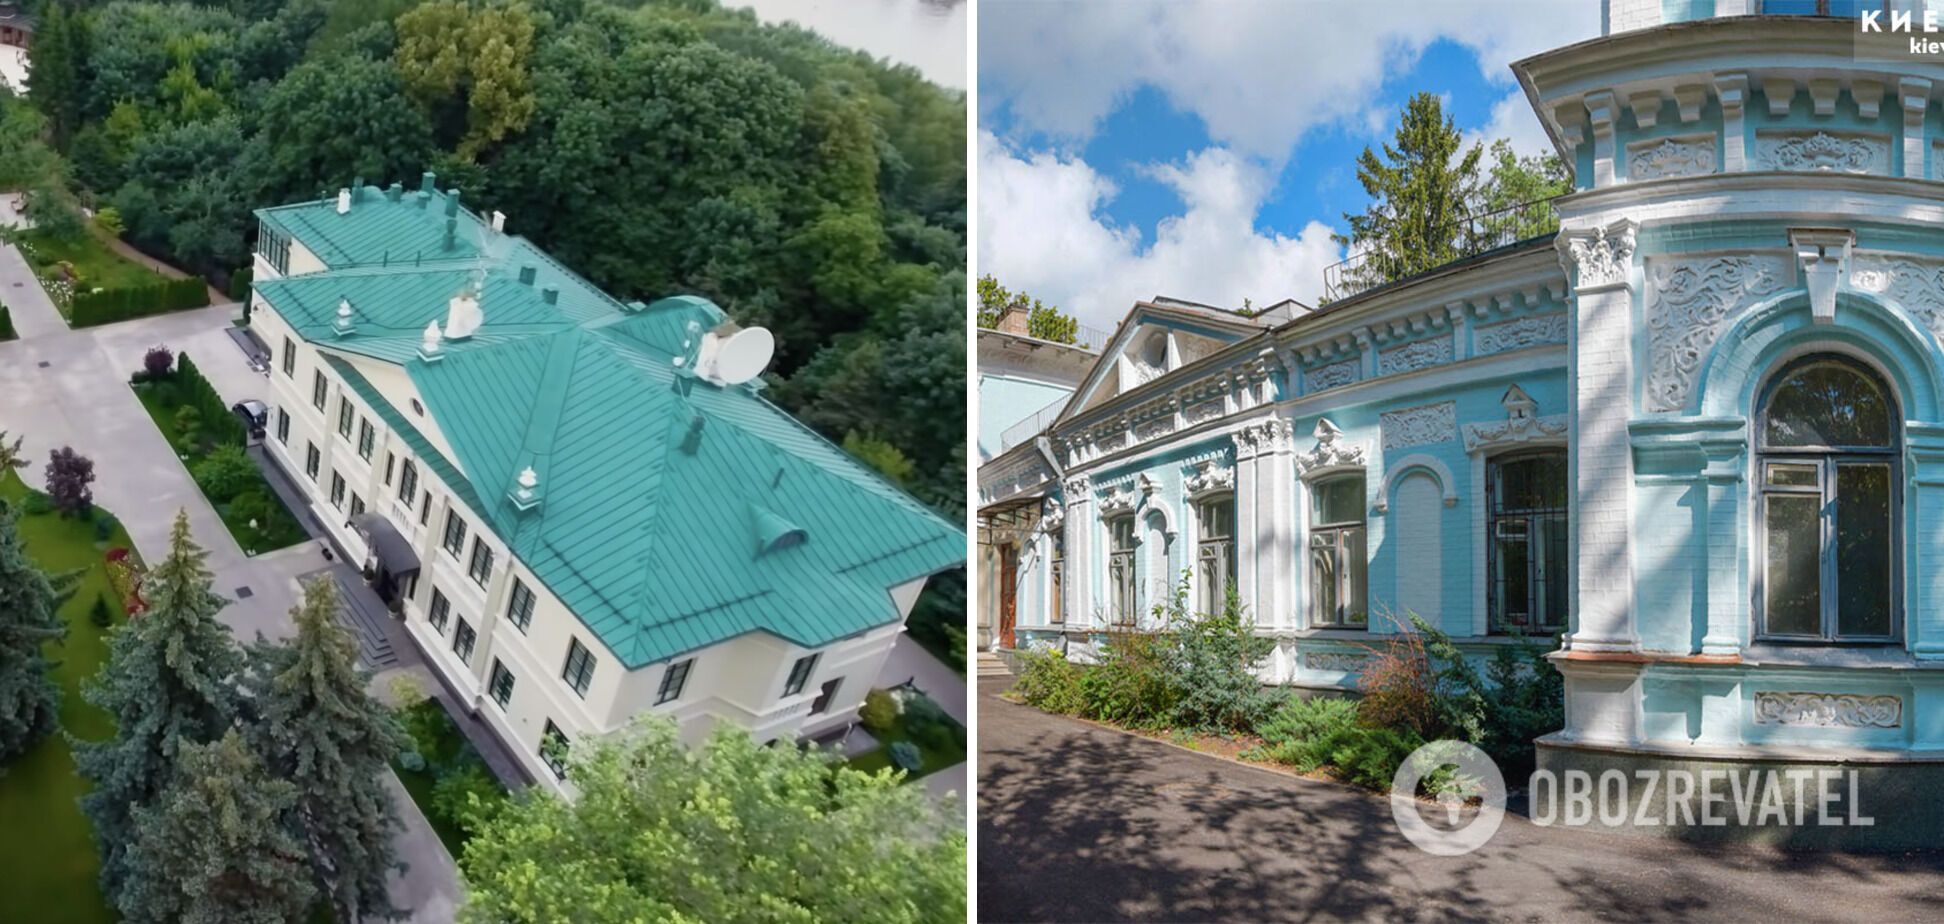 Зліва резиденція Хрущова в Москві, справа дача в Києві